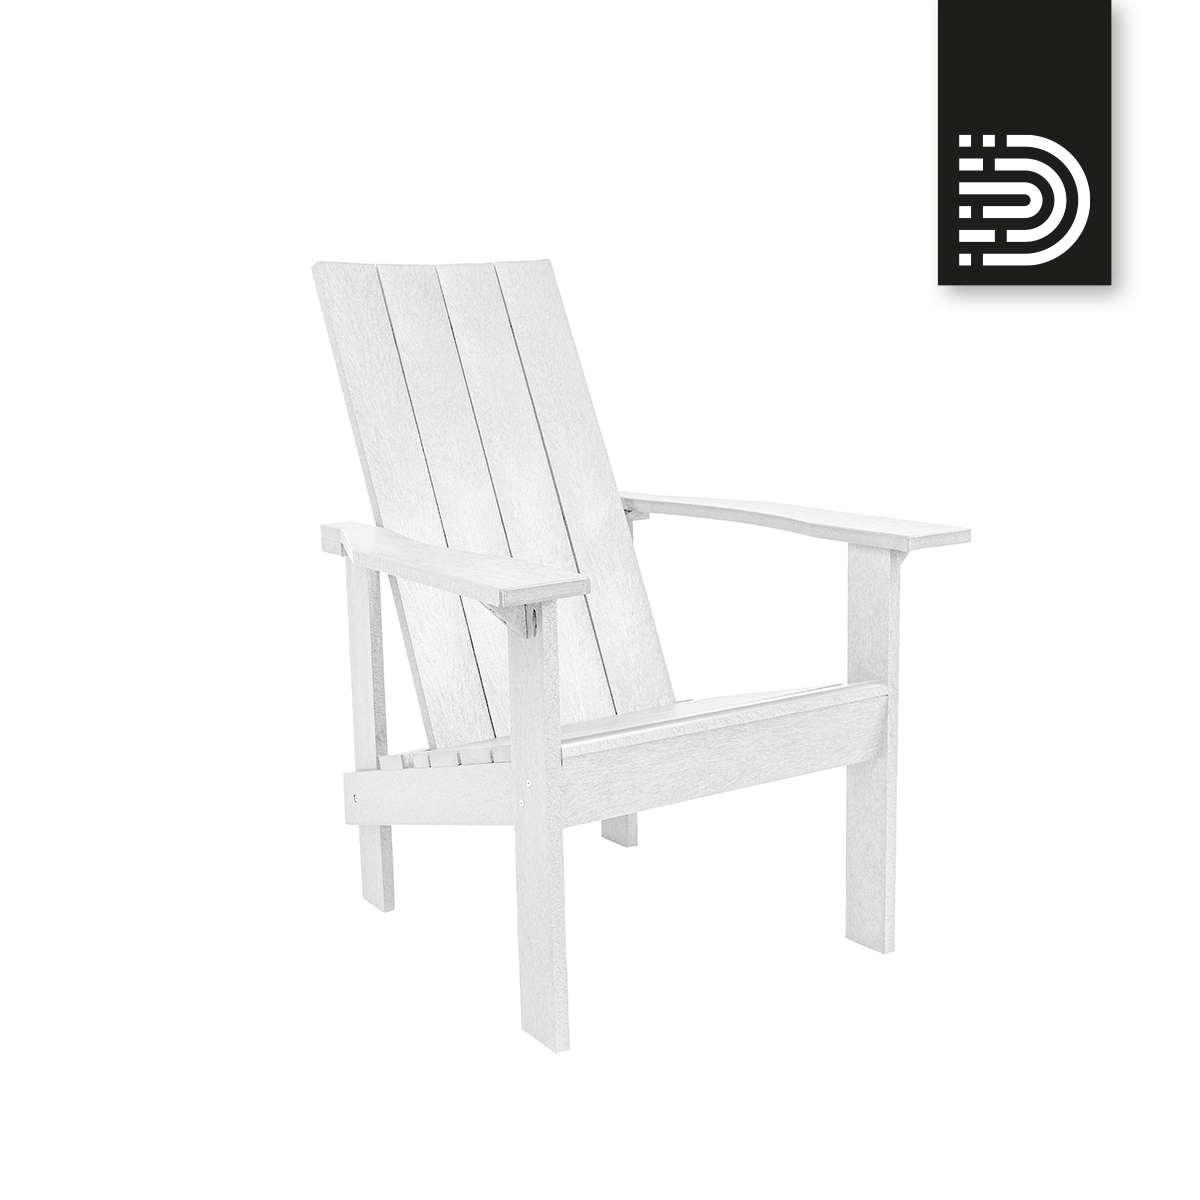 C06 Modern Adirondack - white 02